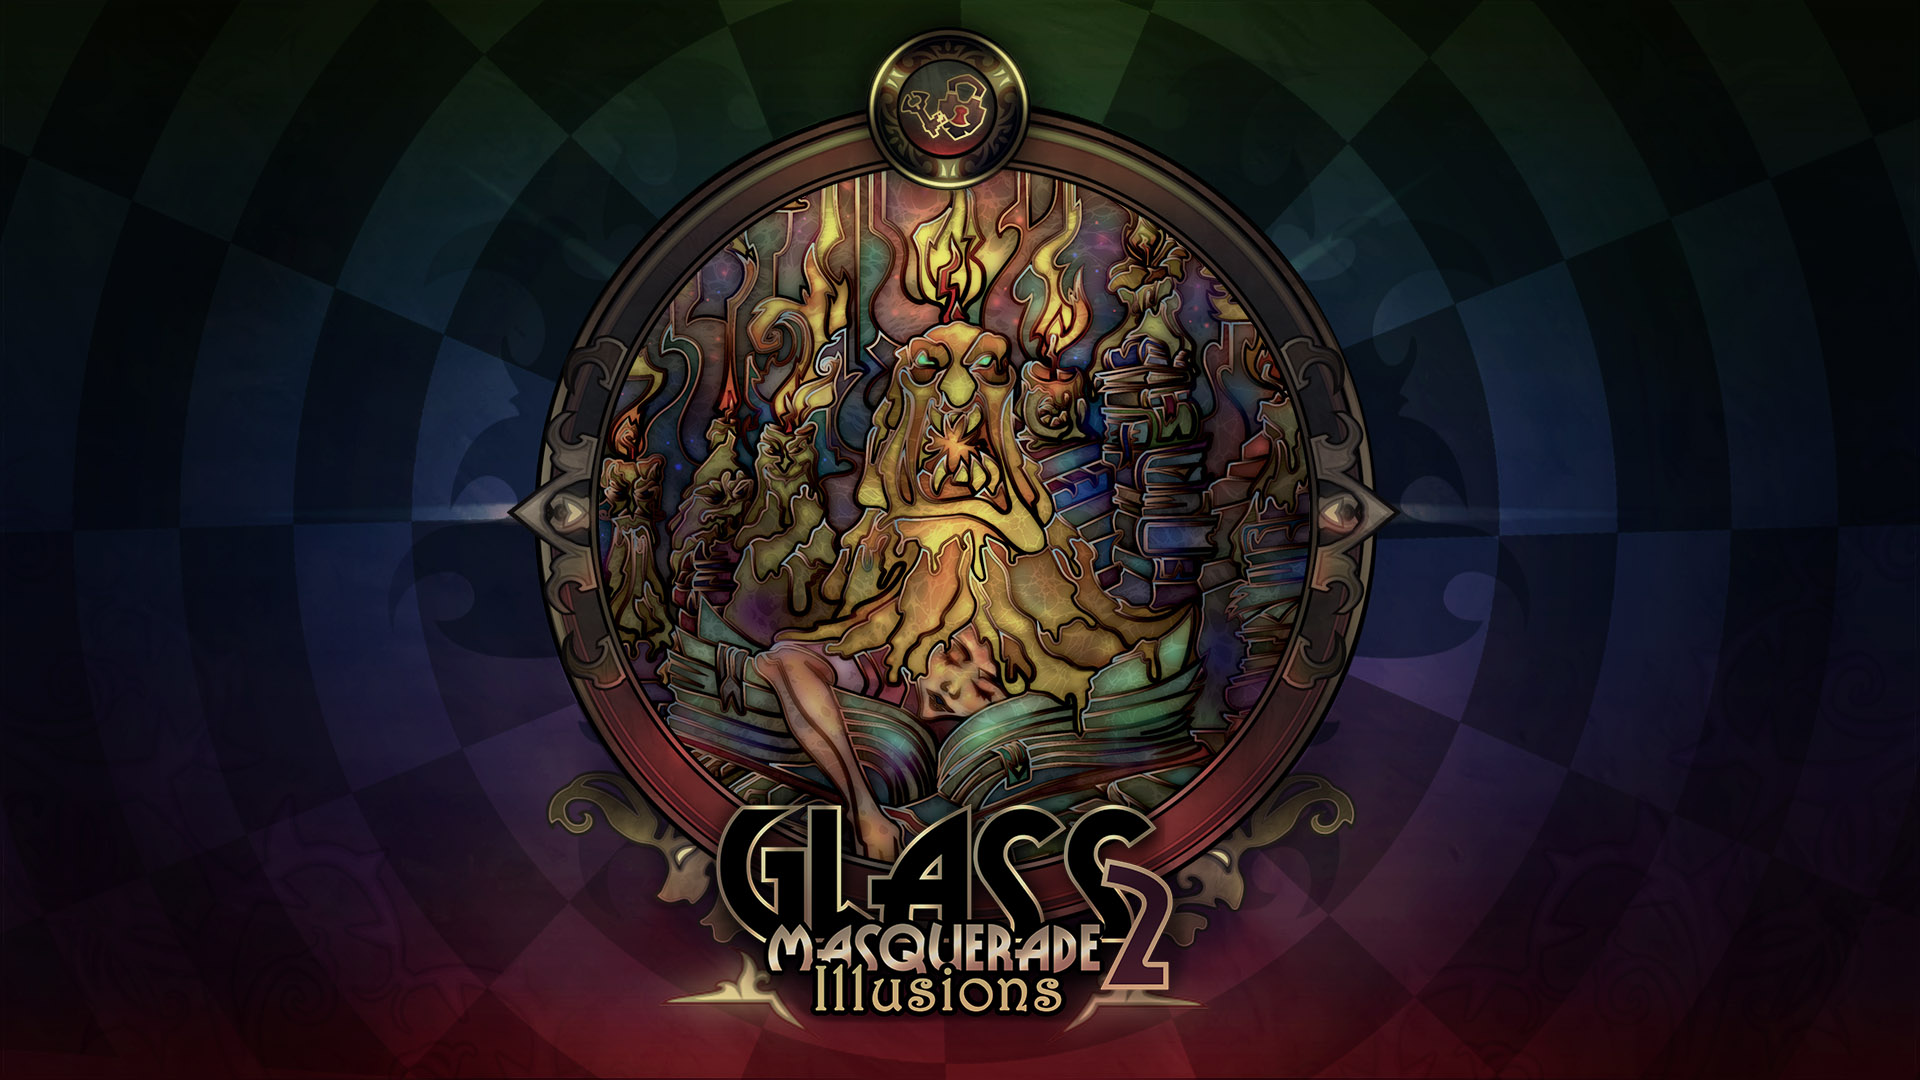 Showcase Glass Masquerade 2 Illusions